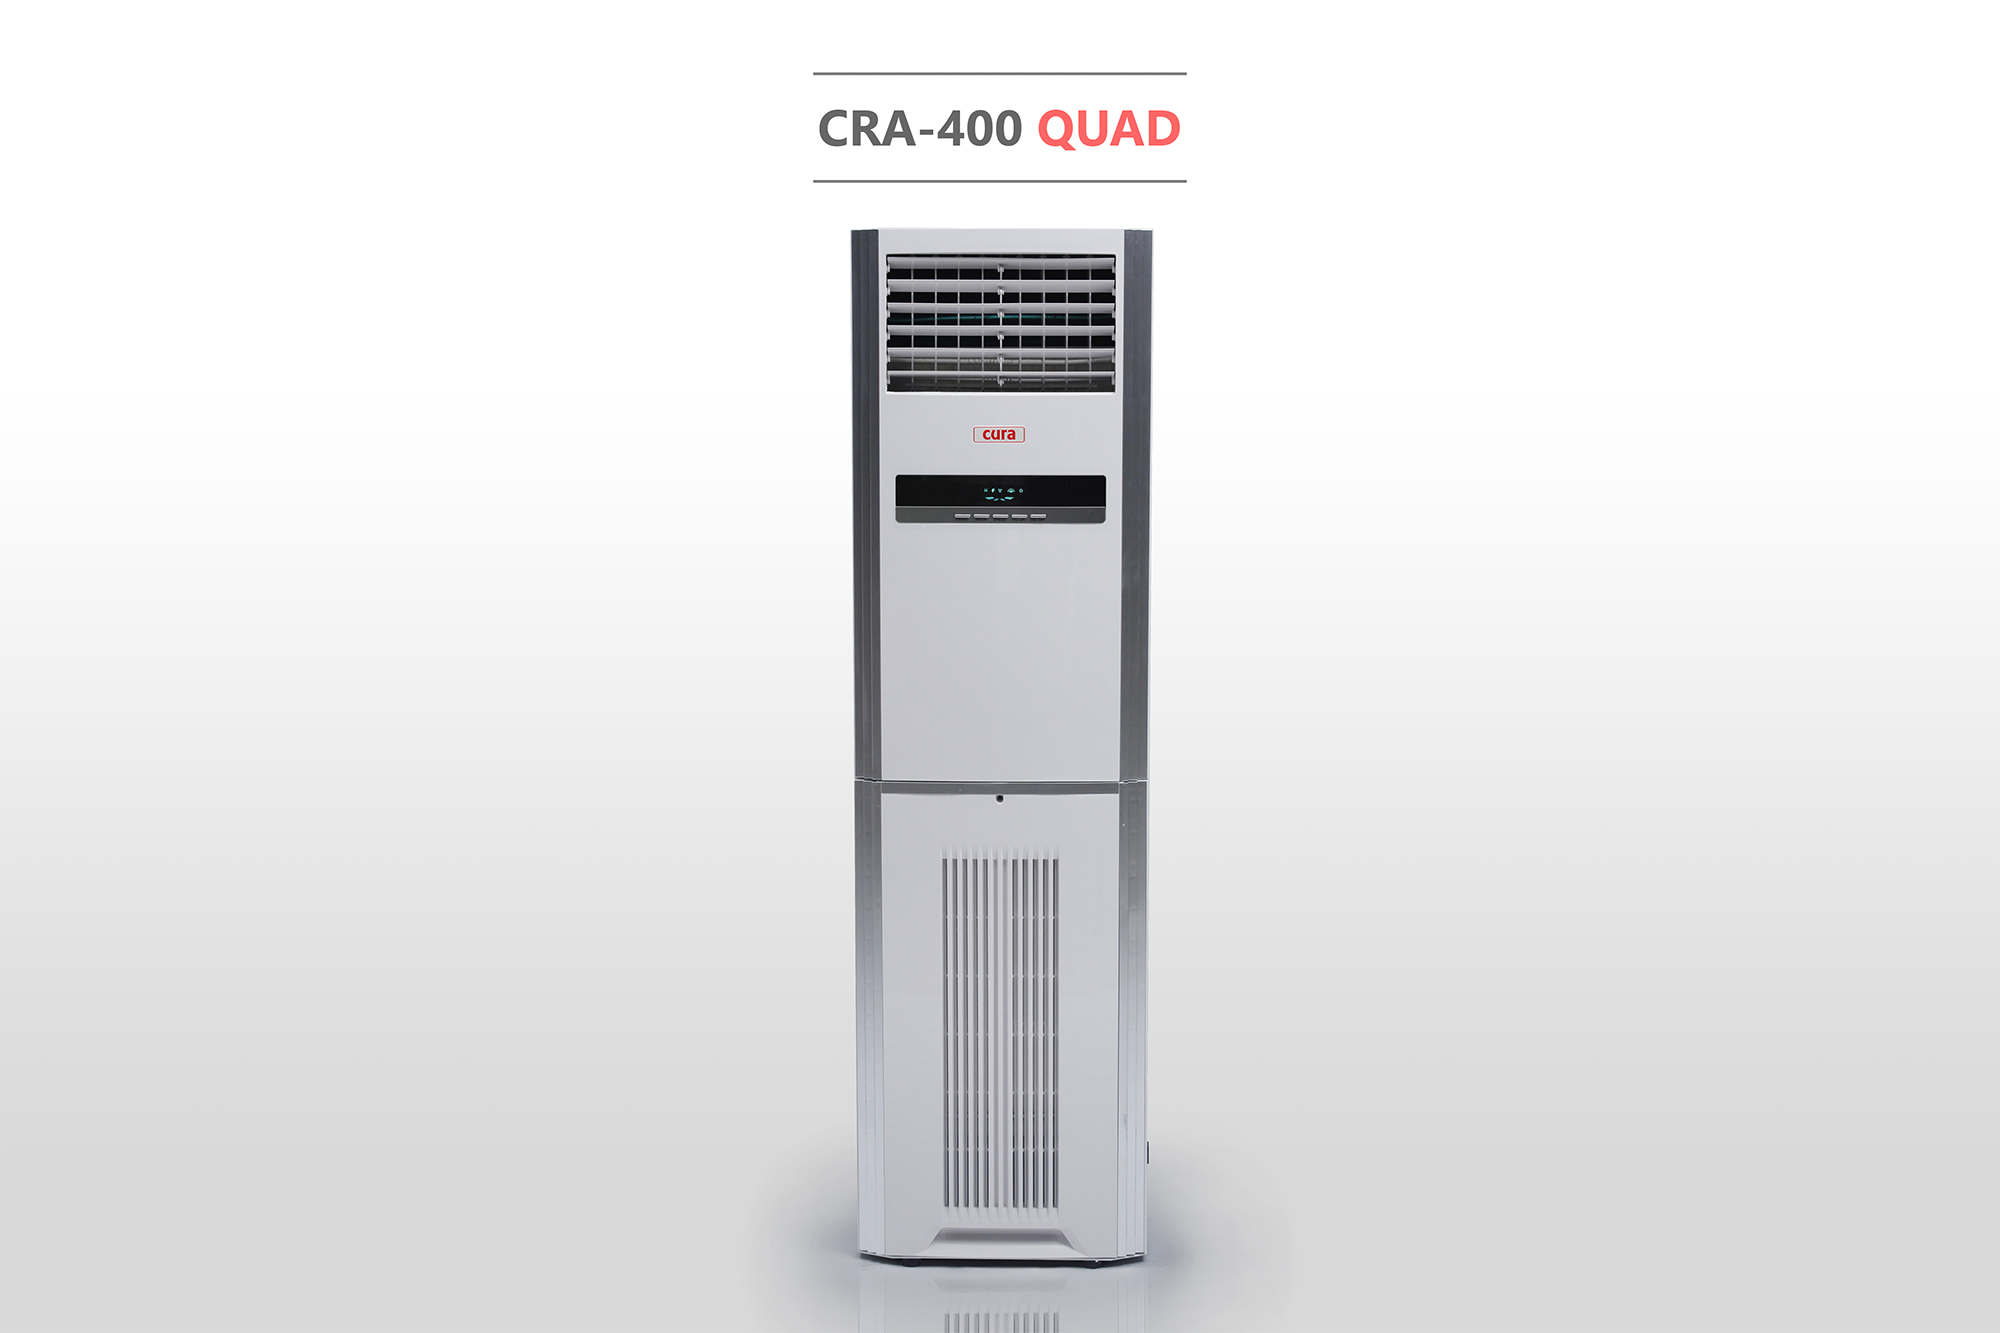 เครื่องฟอกอากาศ กรองฝุ่นด้วย HEPA filter ฆ่าเชื้อด้วยแสง UV ร่วมกับ Titanium Dioxide ดักจับกลิ่นด้วย Activated Carbon ยี่ห้อ CURA รุ่น CRA 400 QUAD สามารถดักจับฝุ่นละเอียดระดับ PM 2.5 ได้มากกว่า 99%